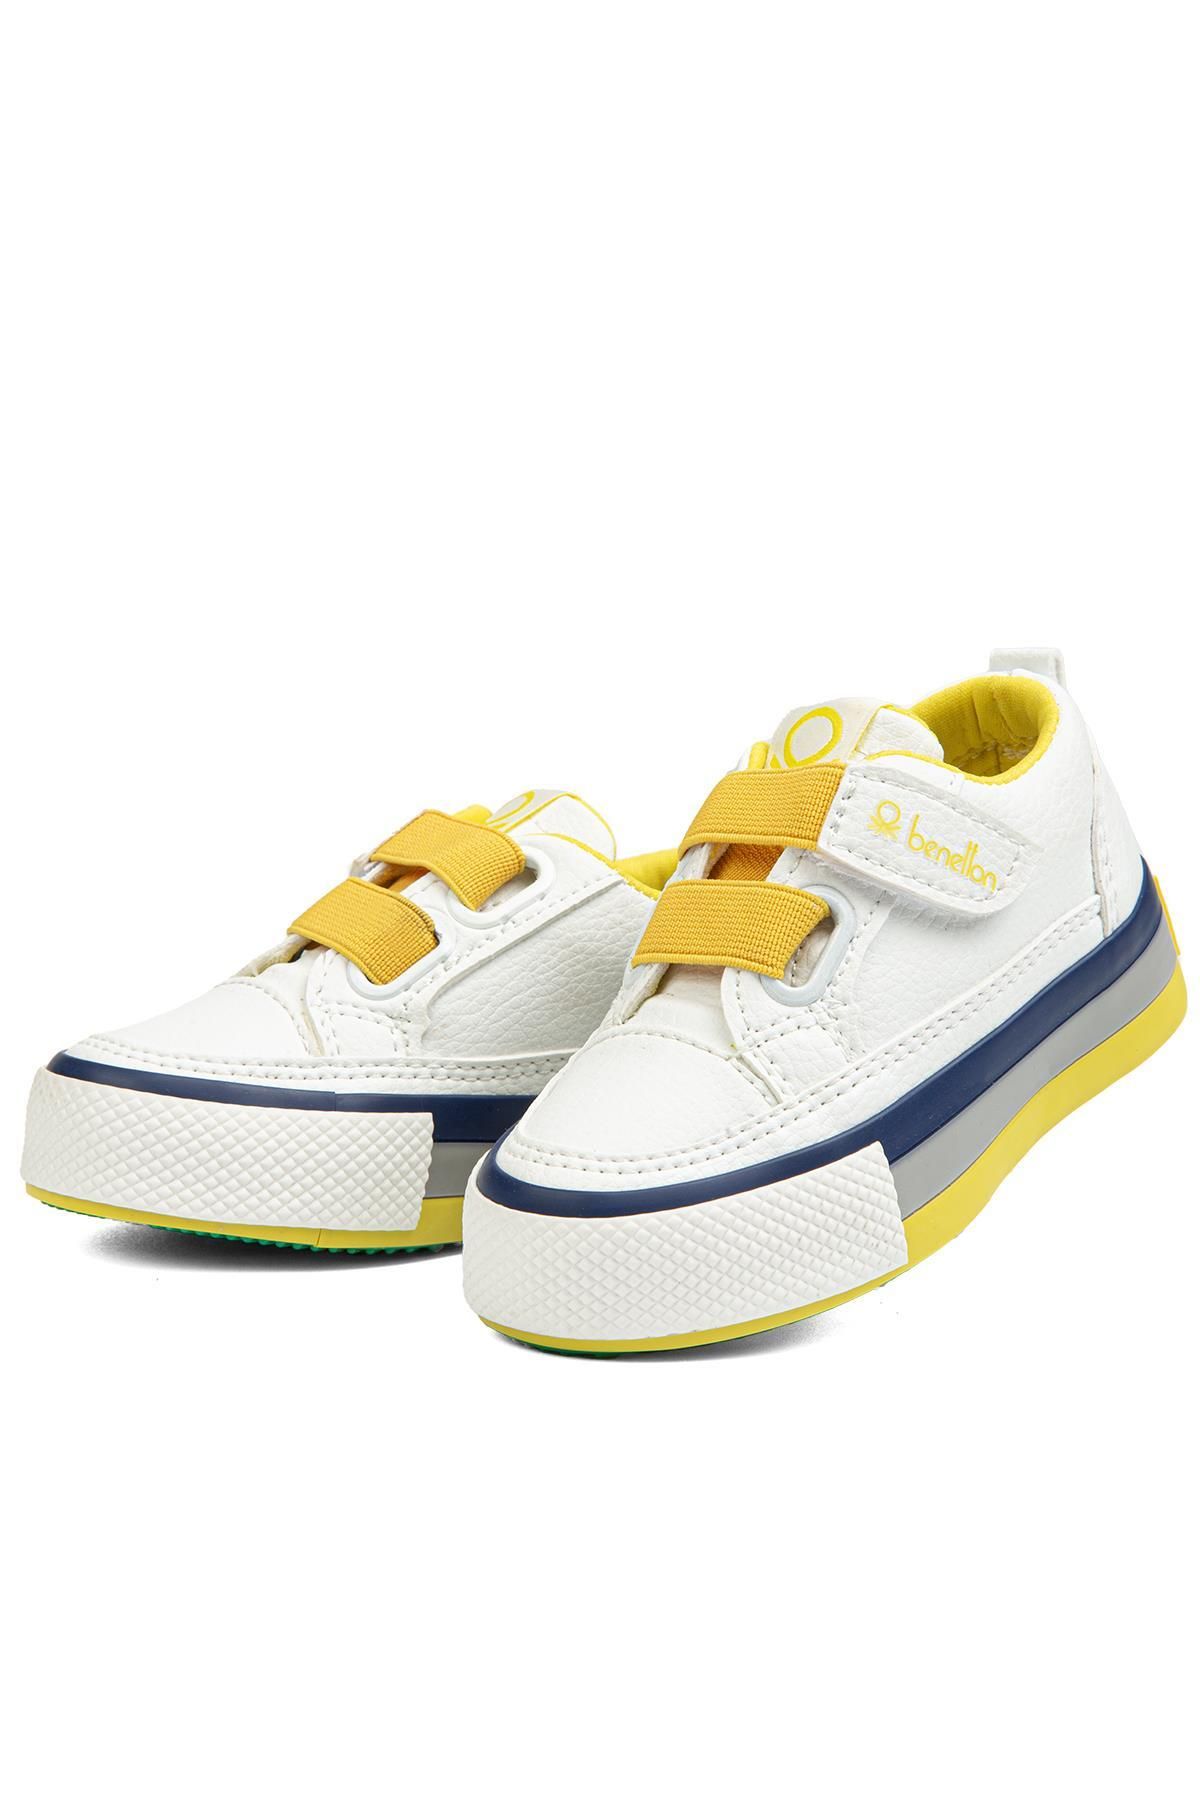 Benetton ® | BN-90445 - Beyaz Sari - Çocuk Spor Ayakkabı